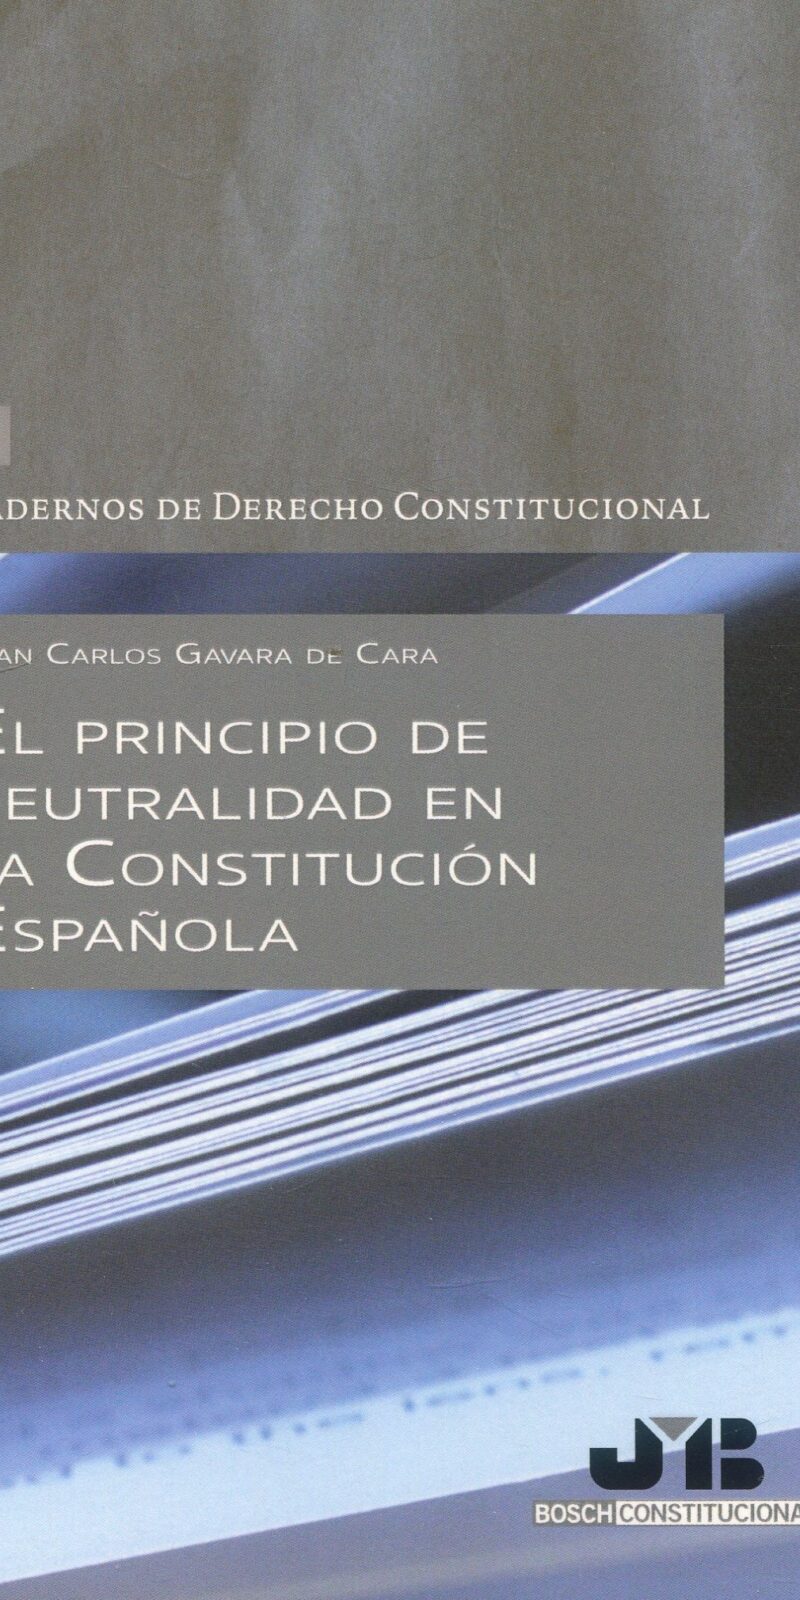 Principio de neutralidad en la Constitución Española 9788419580641